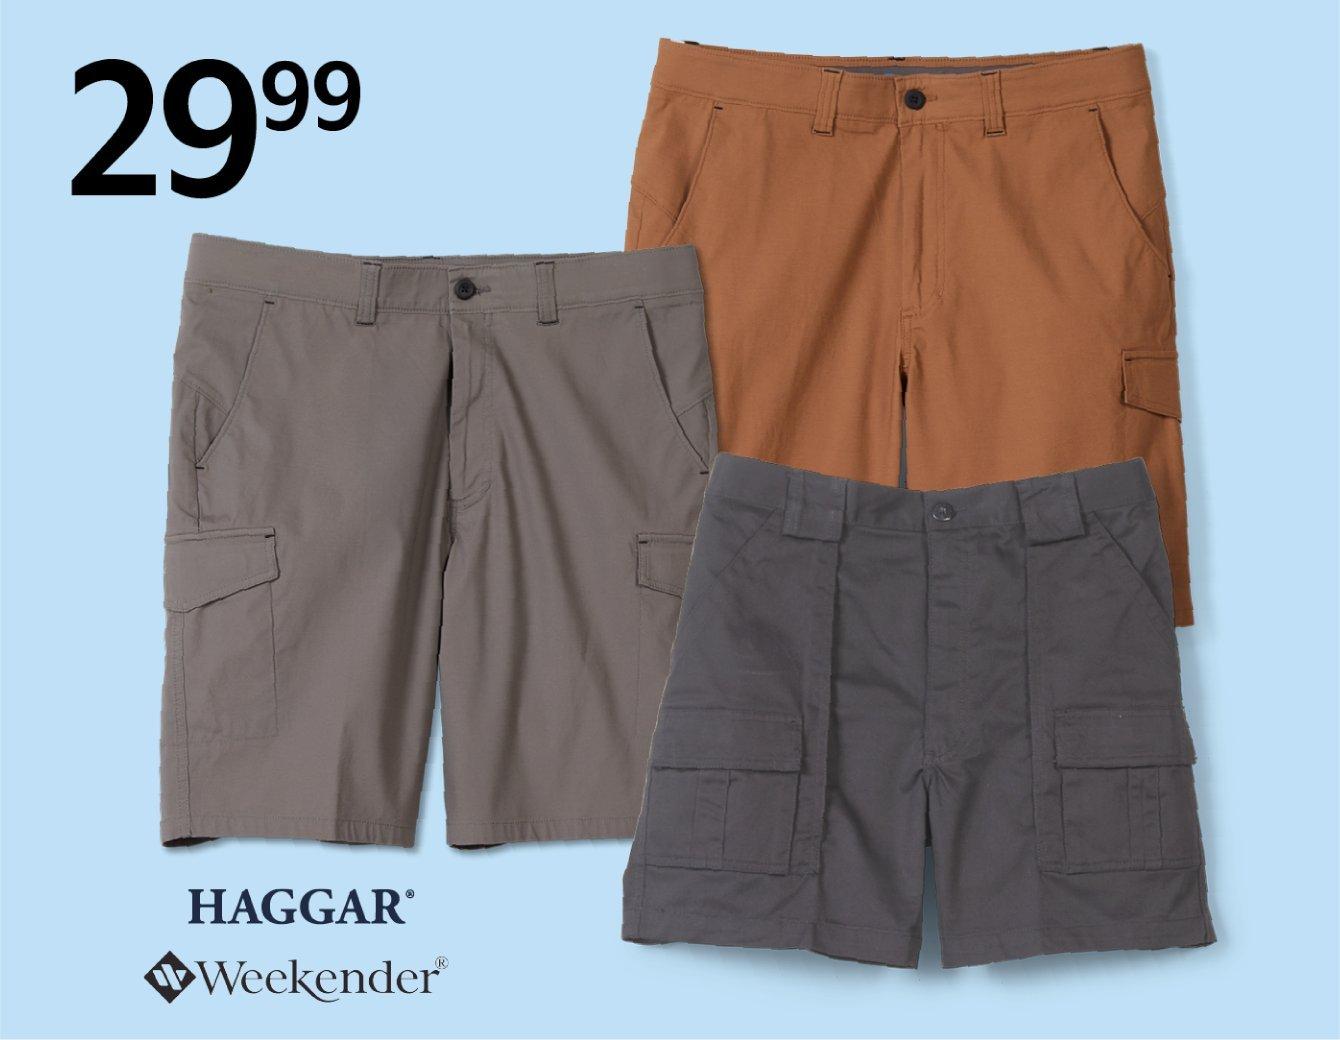 29.99 Hagger or Weekender Shorts for men